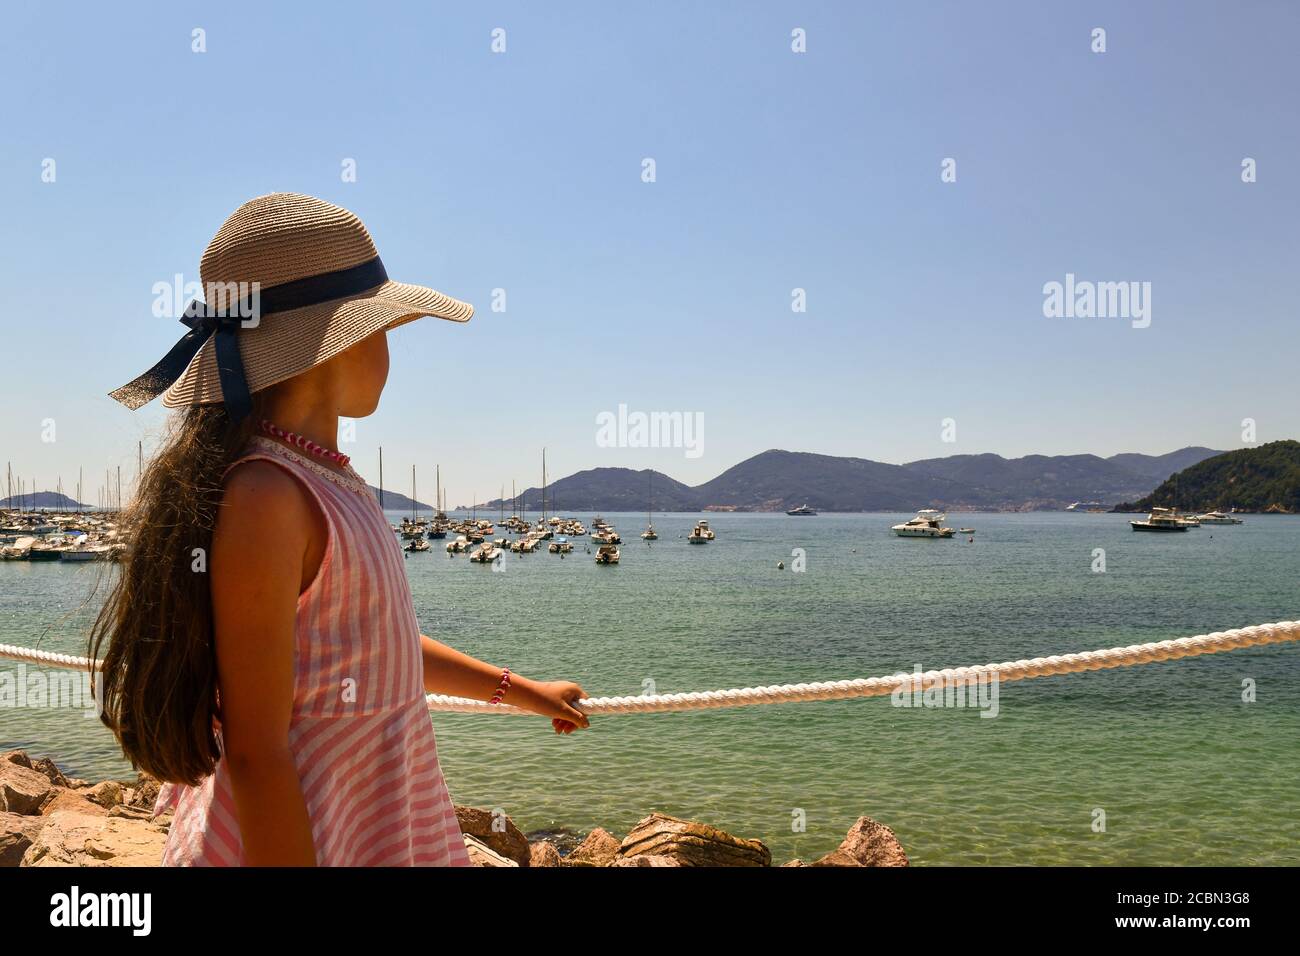 Portrait d'une petite fille à poil long (9-10 ans) admirant la vue du golfe de Poètes avec le promontoire de Porto Venere, Lerici, la Spezia, Italie Banque D'Images